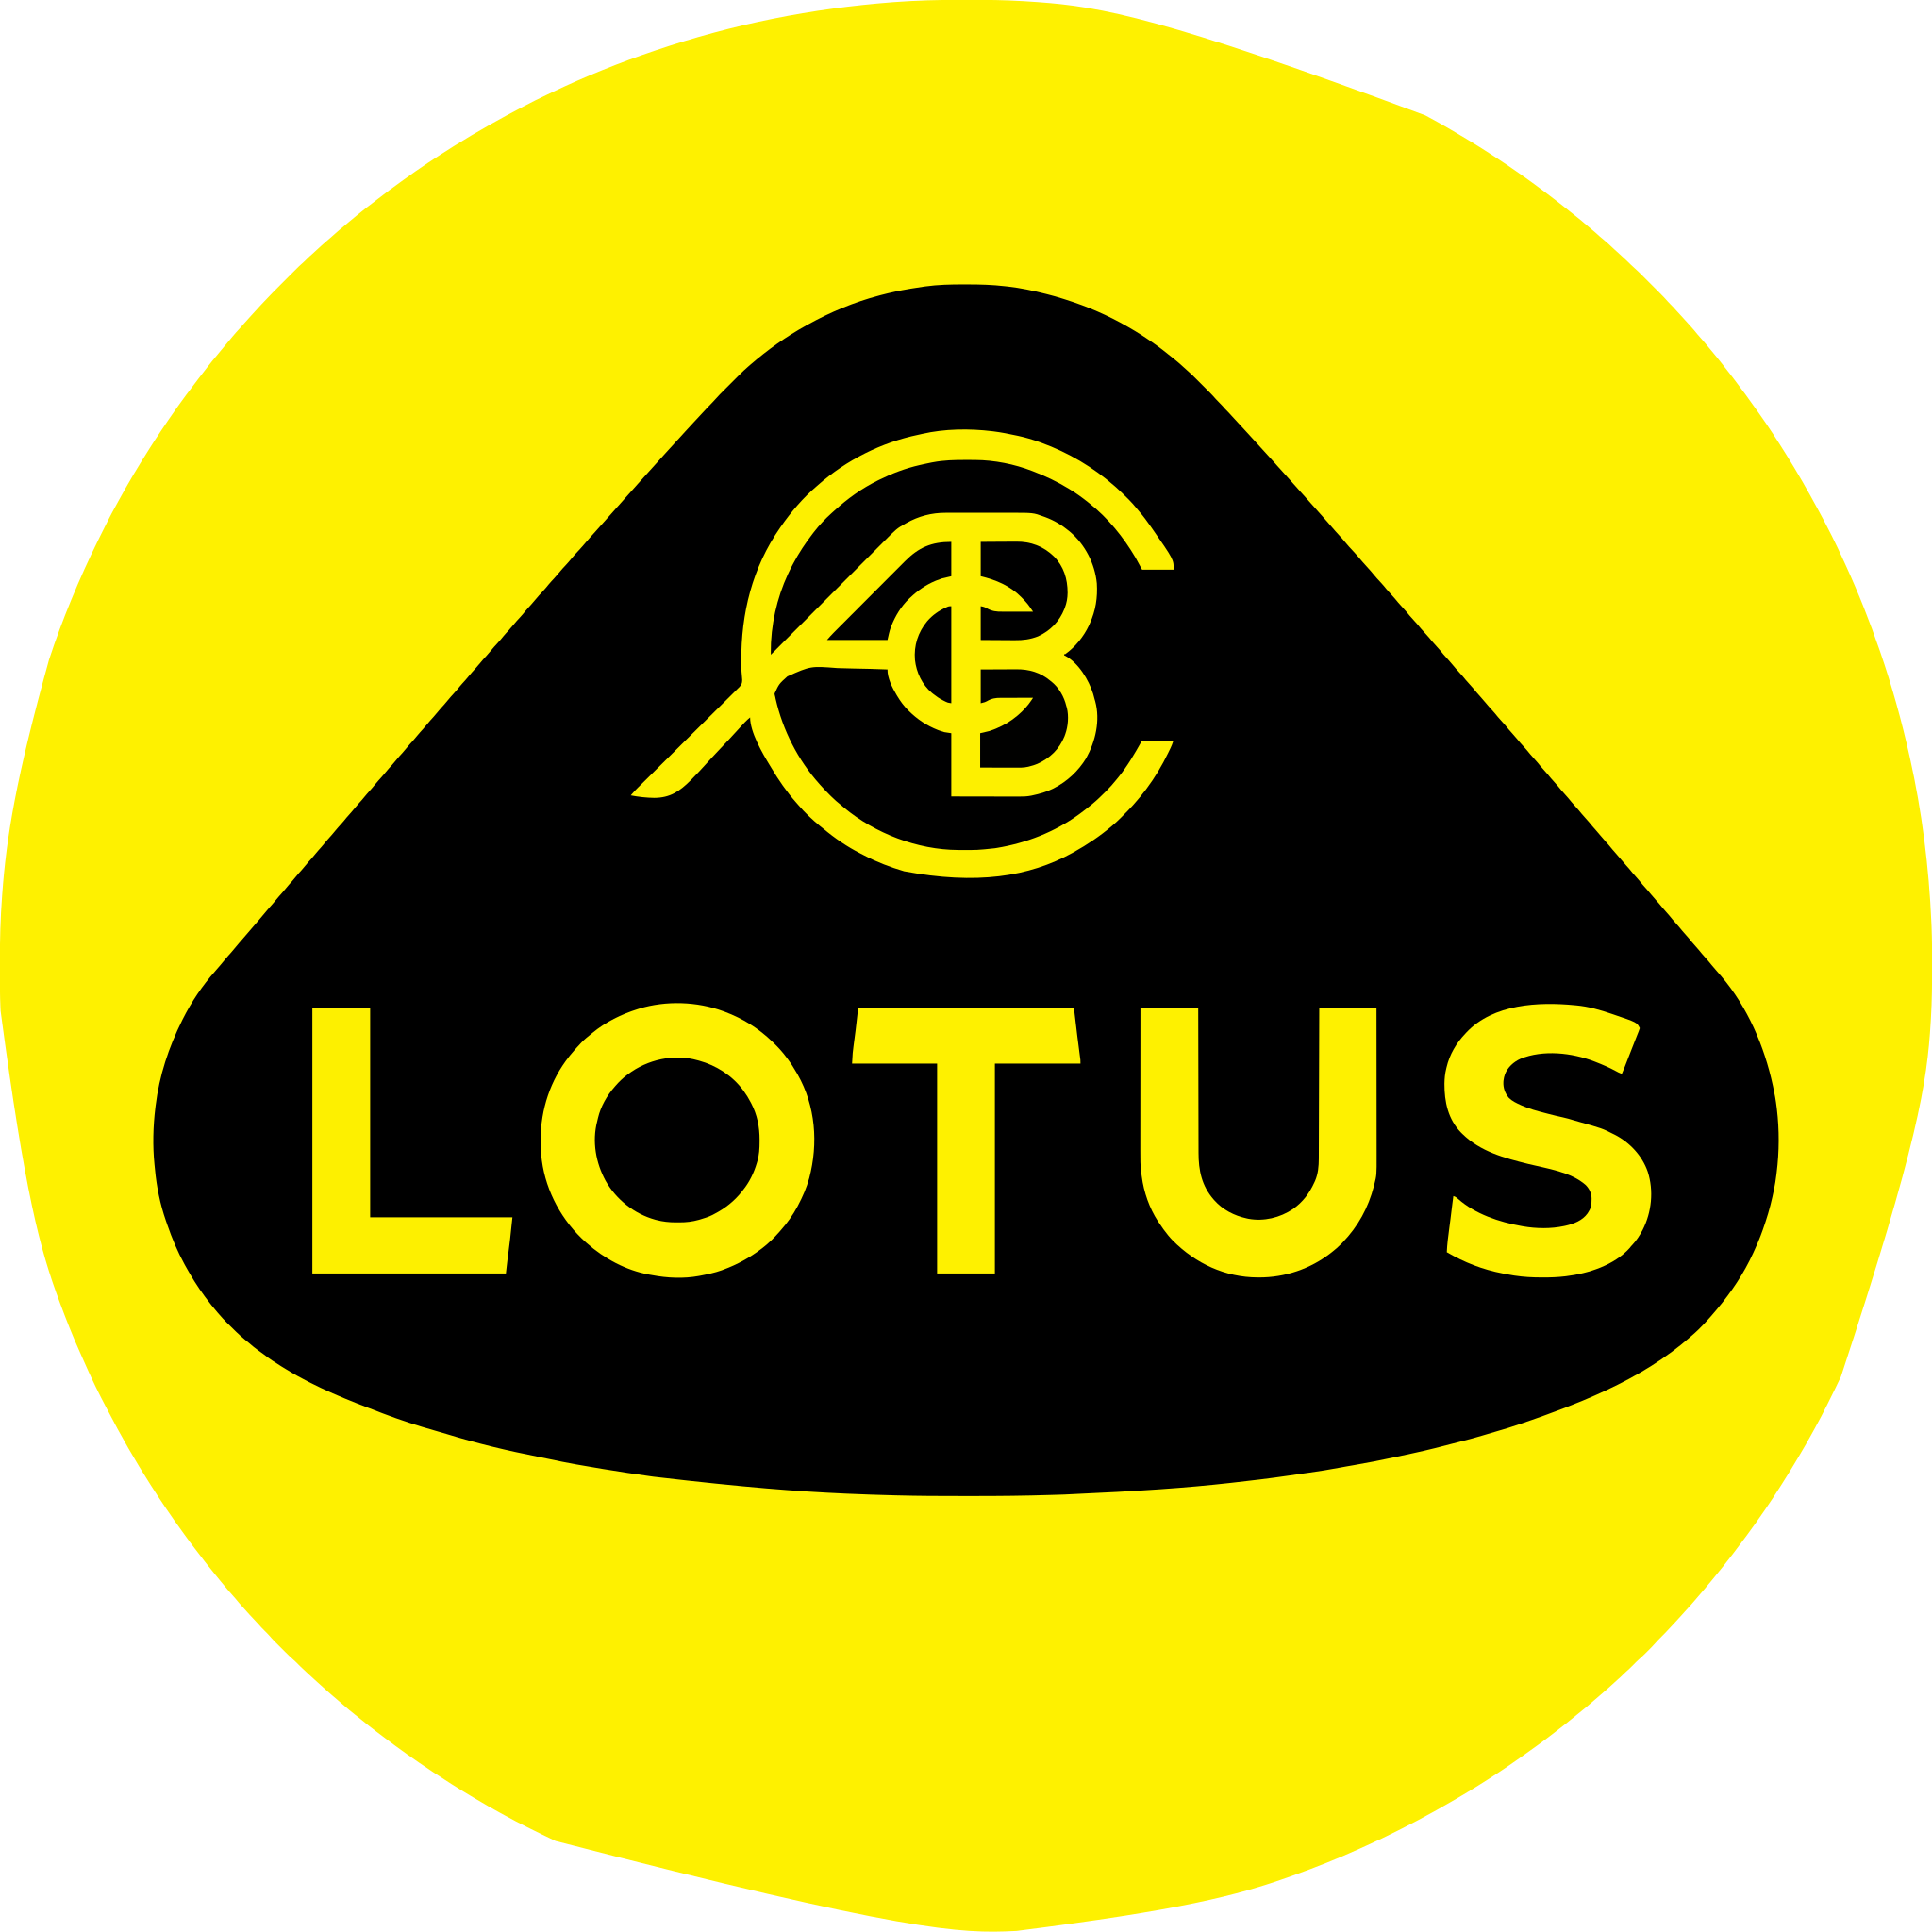 File:Lotus Cars logo.svg - Wikipedia